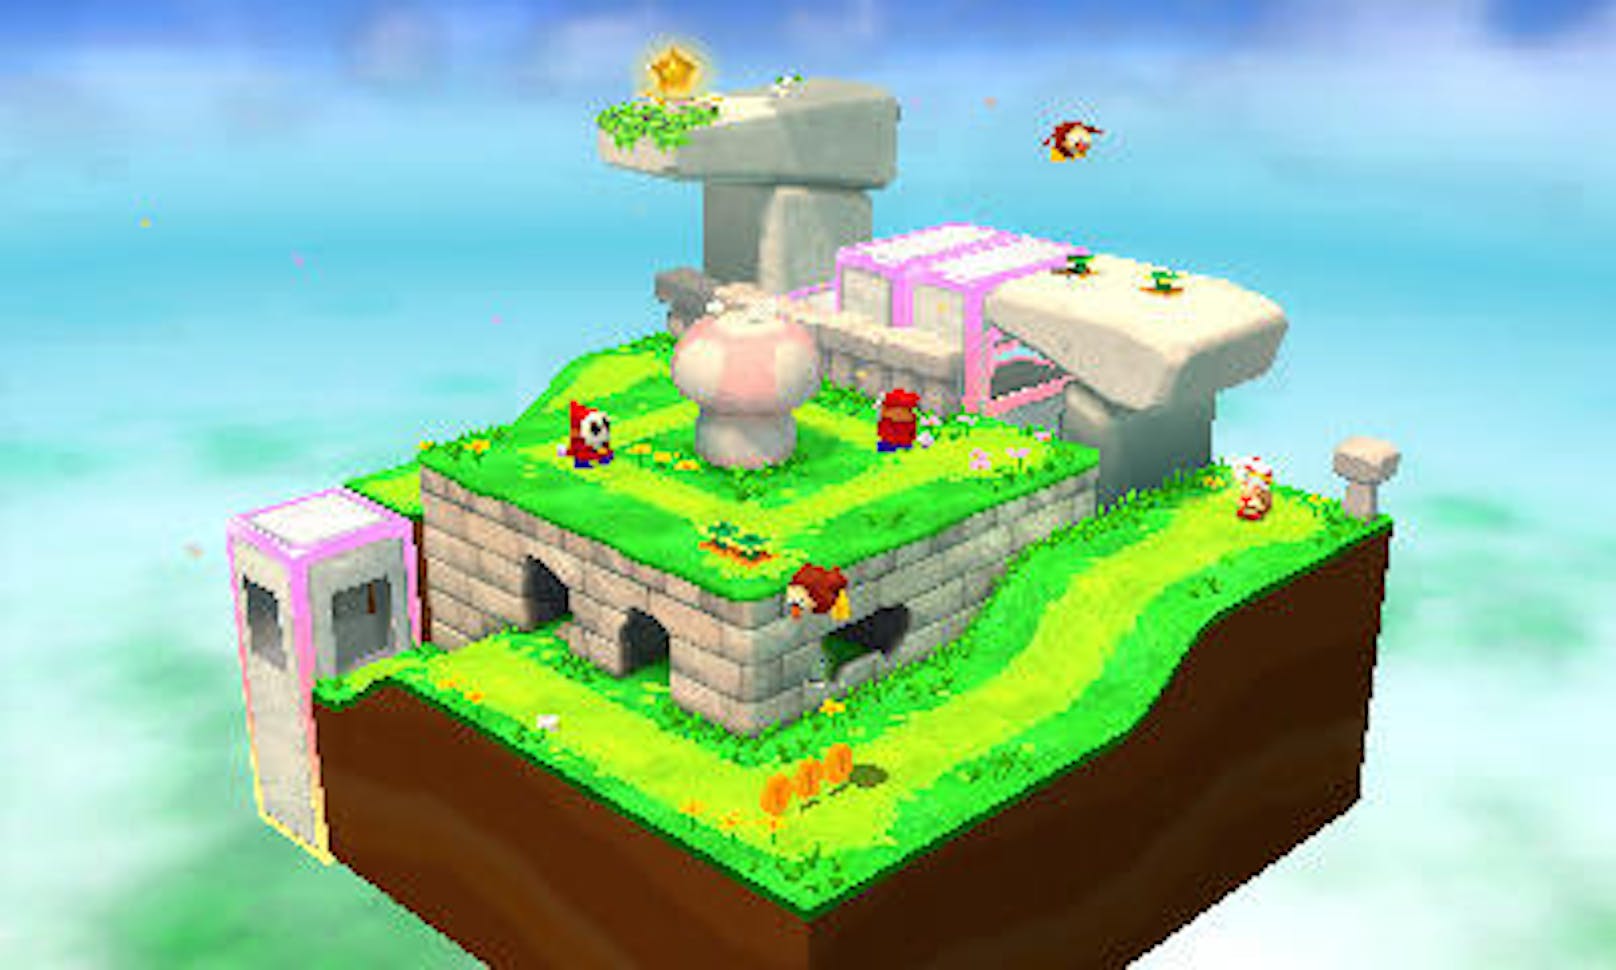 Man kann Nintendo zwar vorwerfen, das Augenmerk derzeit stark auf Remakes zu legen. Wenn aber ein sowieso schon toller Wii-U-Titel wie Captain Toad: Treasure Tracker auf neueren Konsolengenerationen spielbar wird und noch dazu mit sinnvollen Verbesserungen glänzt, dann gibt es wenig Platz für Kritik.